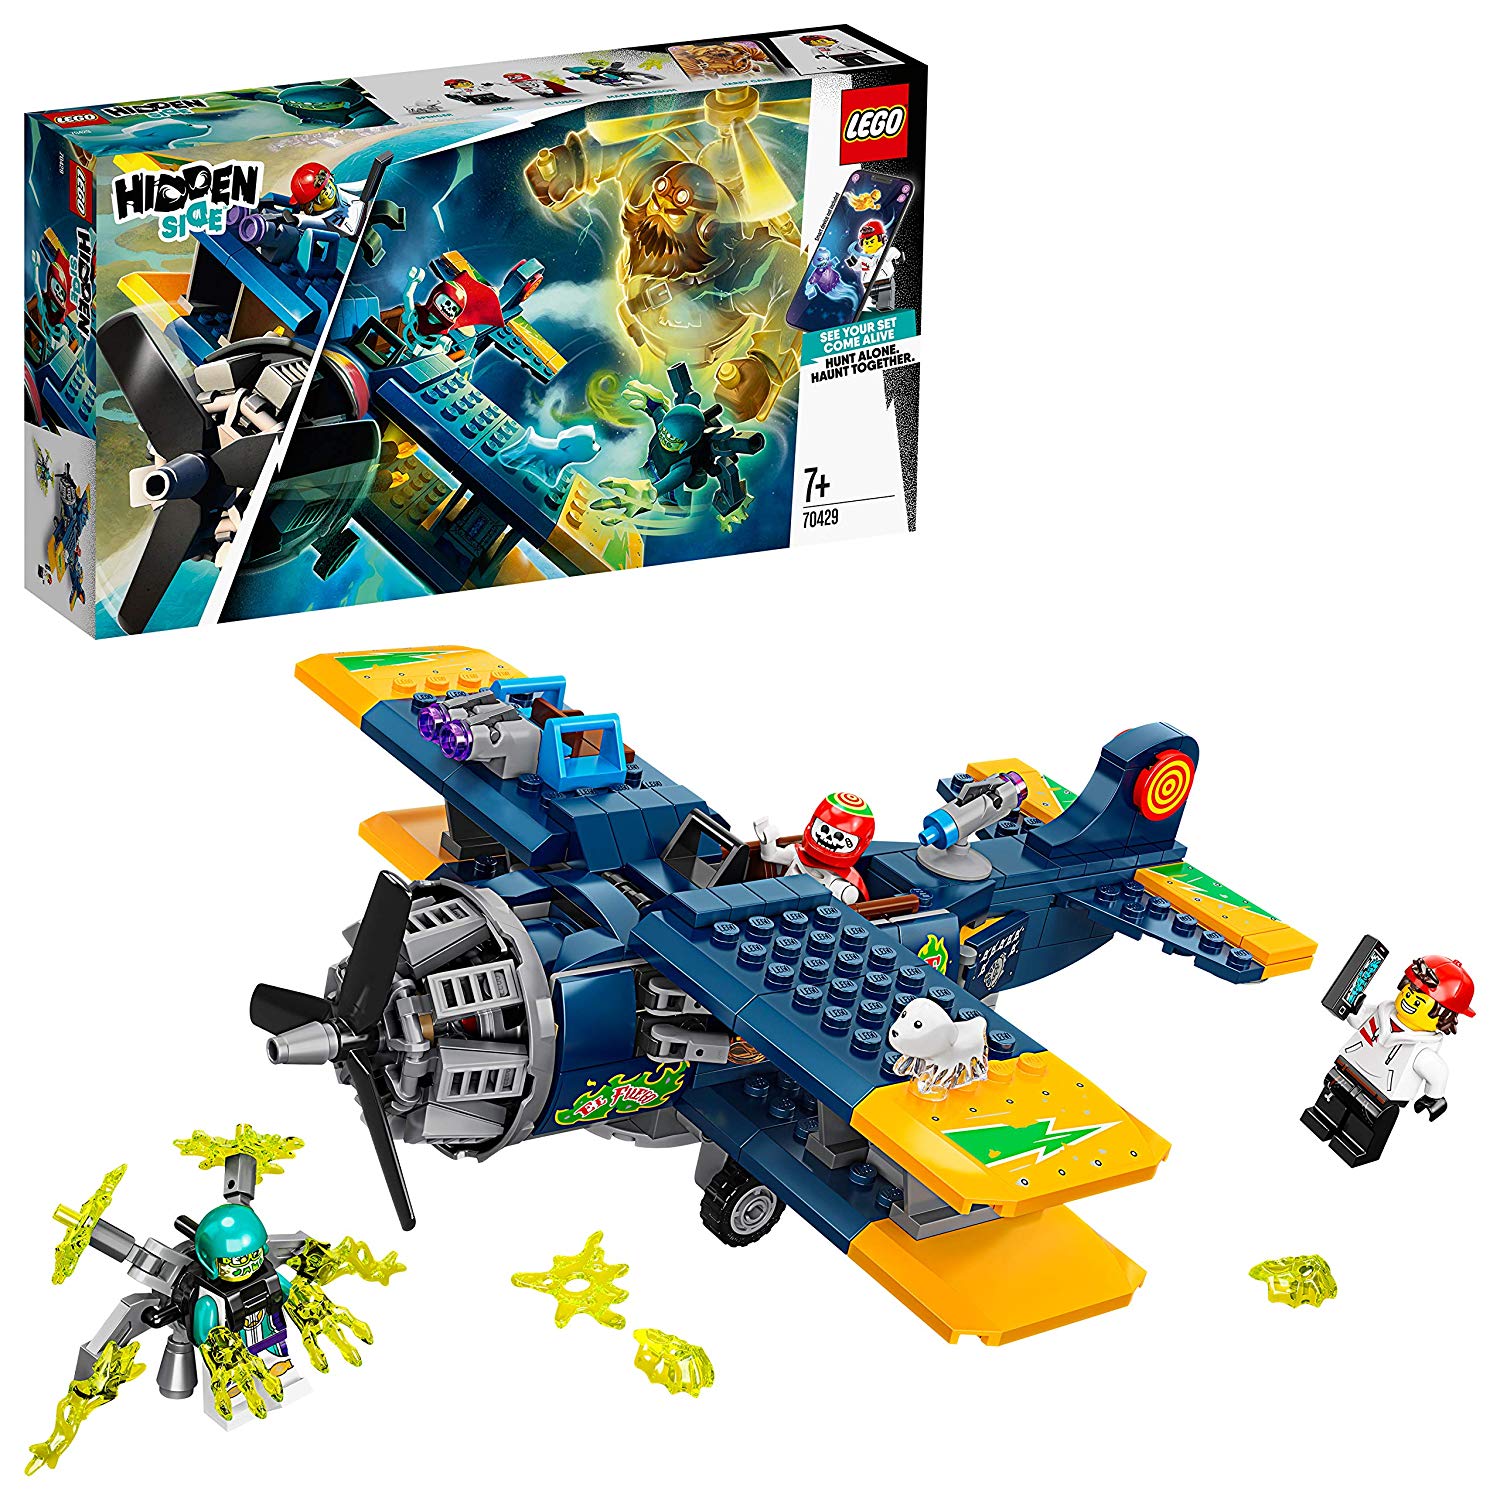 Lego 70429 – El Fuegos Stunt Plane, Hidden Side, Construction Kit